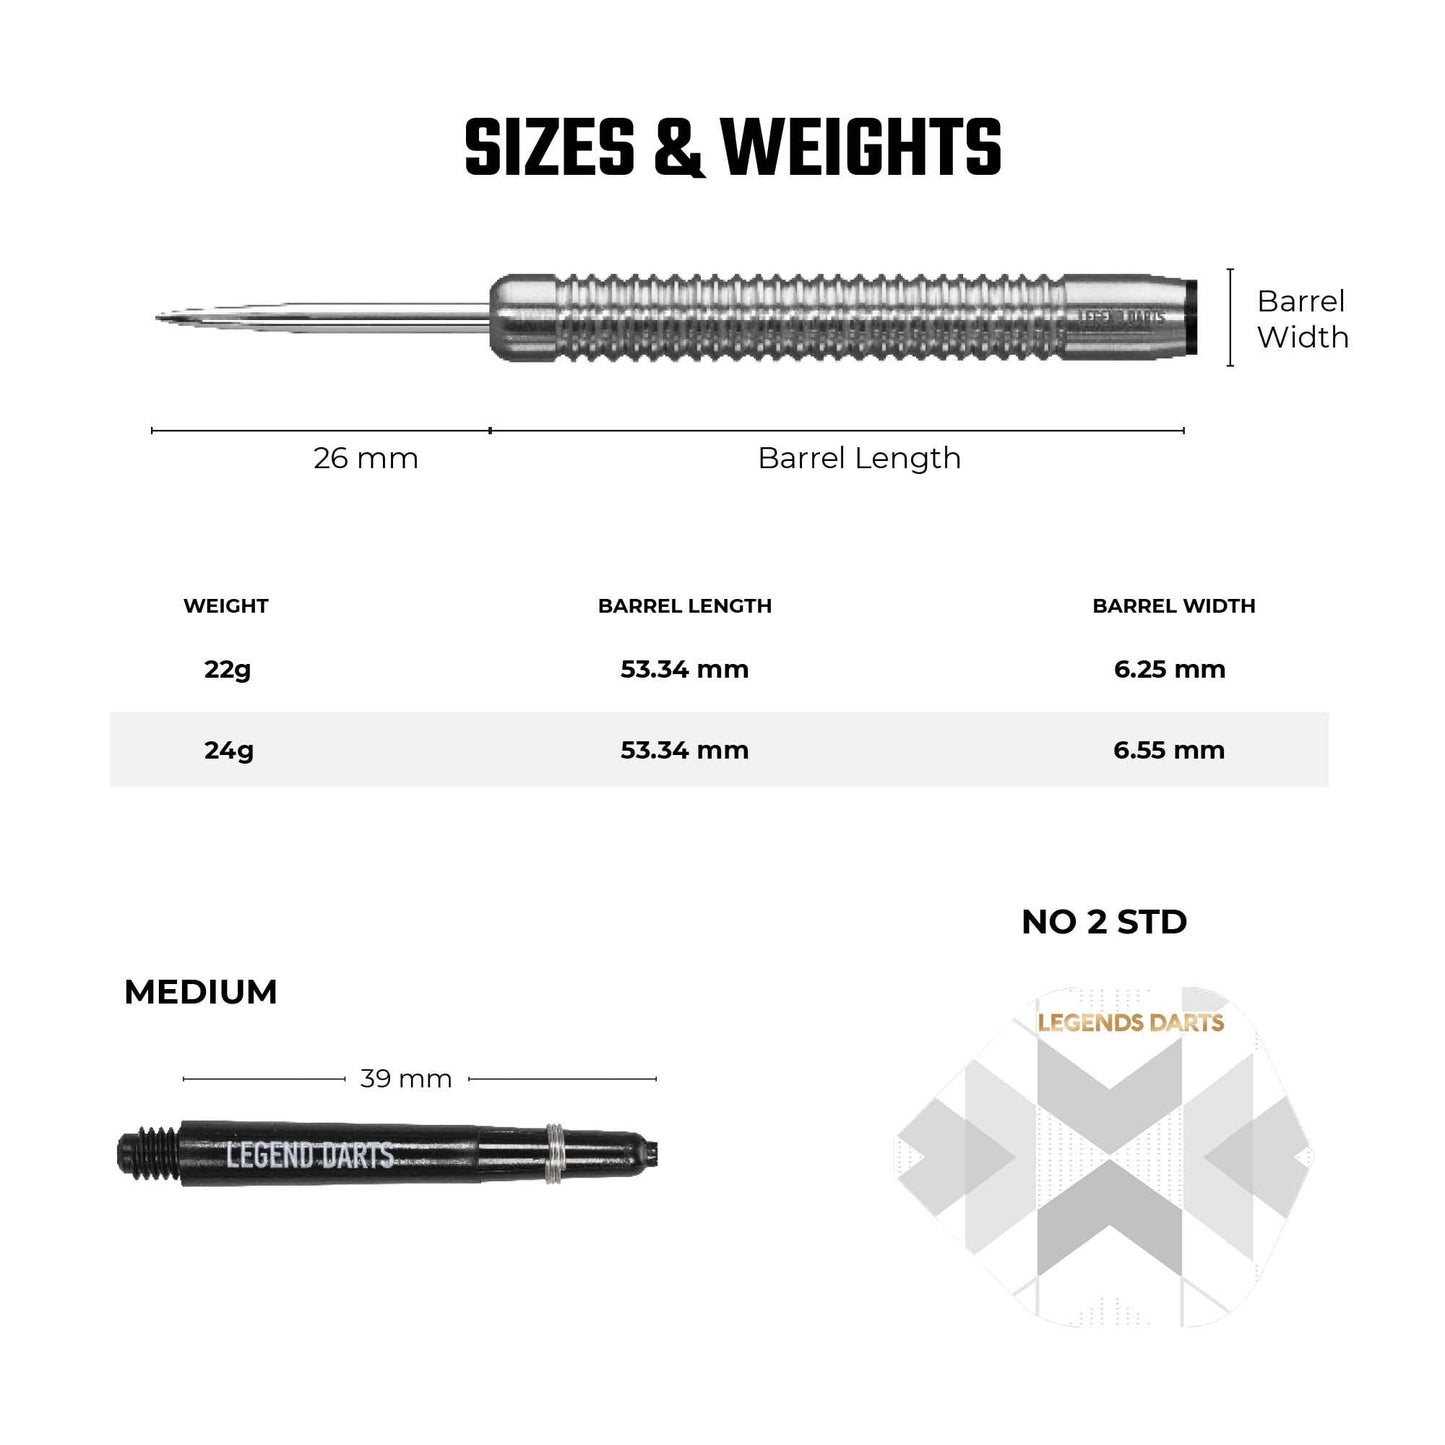 Legend Darts - Steel Tip - 90% Tungsten - Pro Series - V3 - Ringed